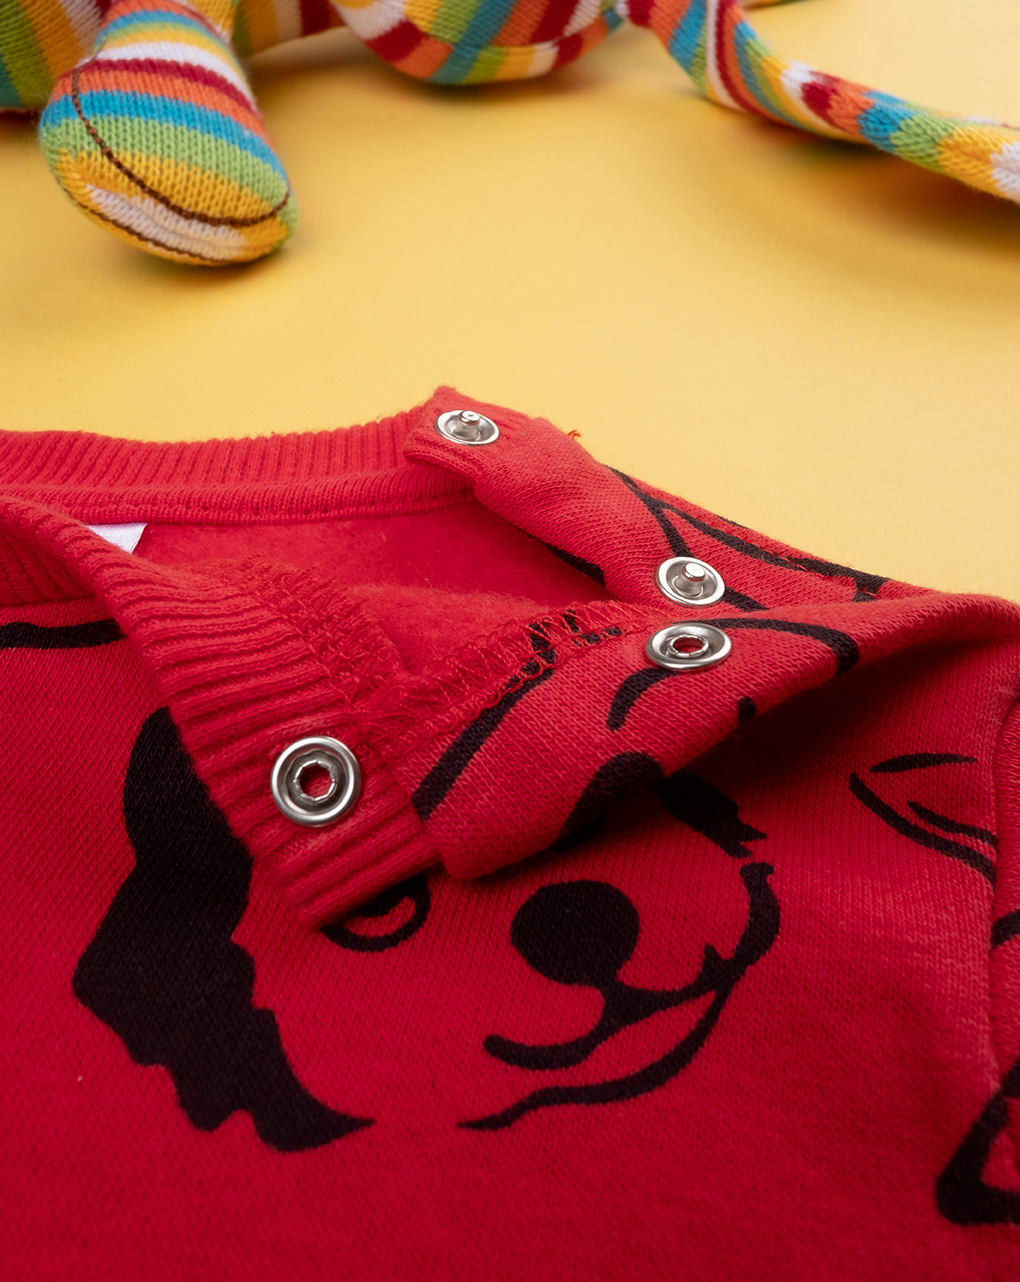 βρεφική μπλούζα φούτερ κόκκινη με σκυλάκια για αγόρι - Prénatal